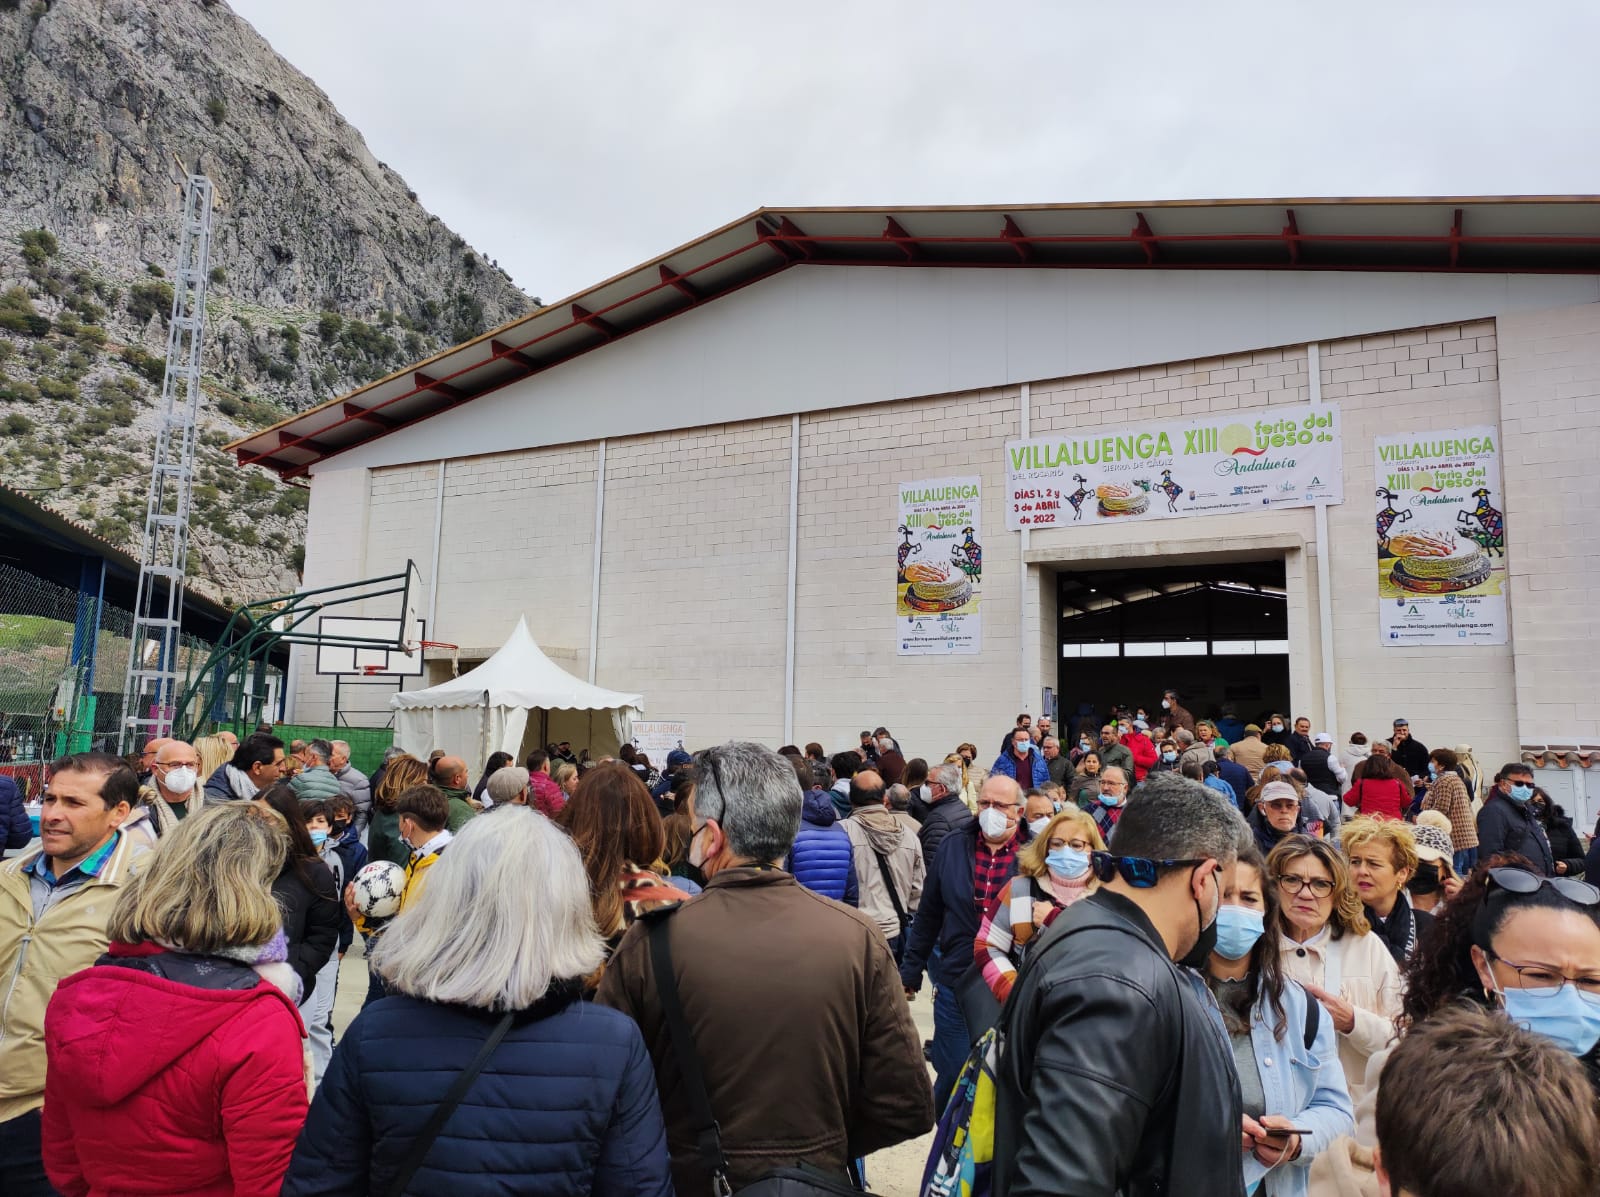 La Feria del Queso de Andalucía vuelve a triunfar en Villaluenga un año más